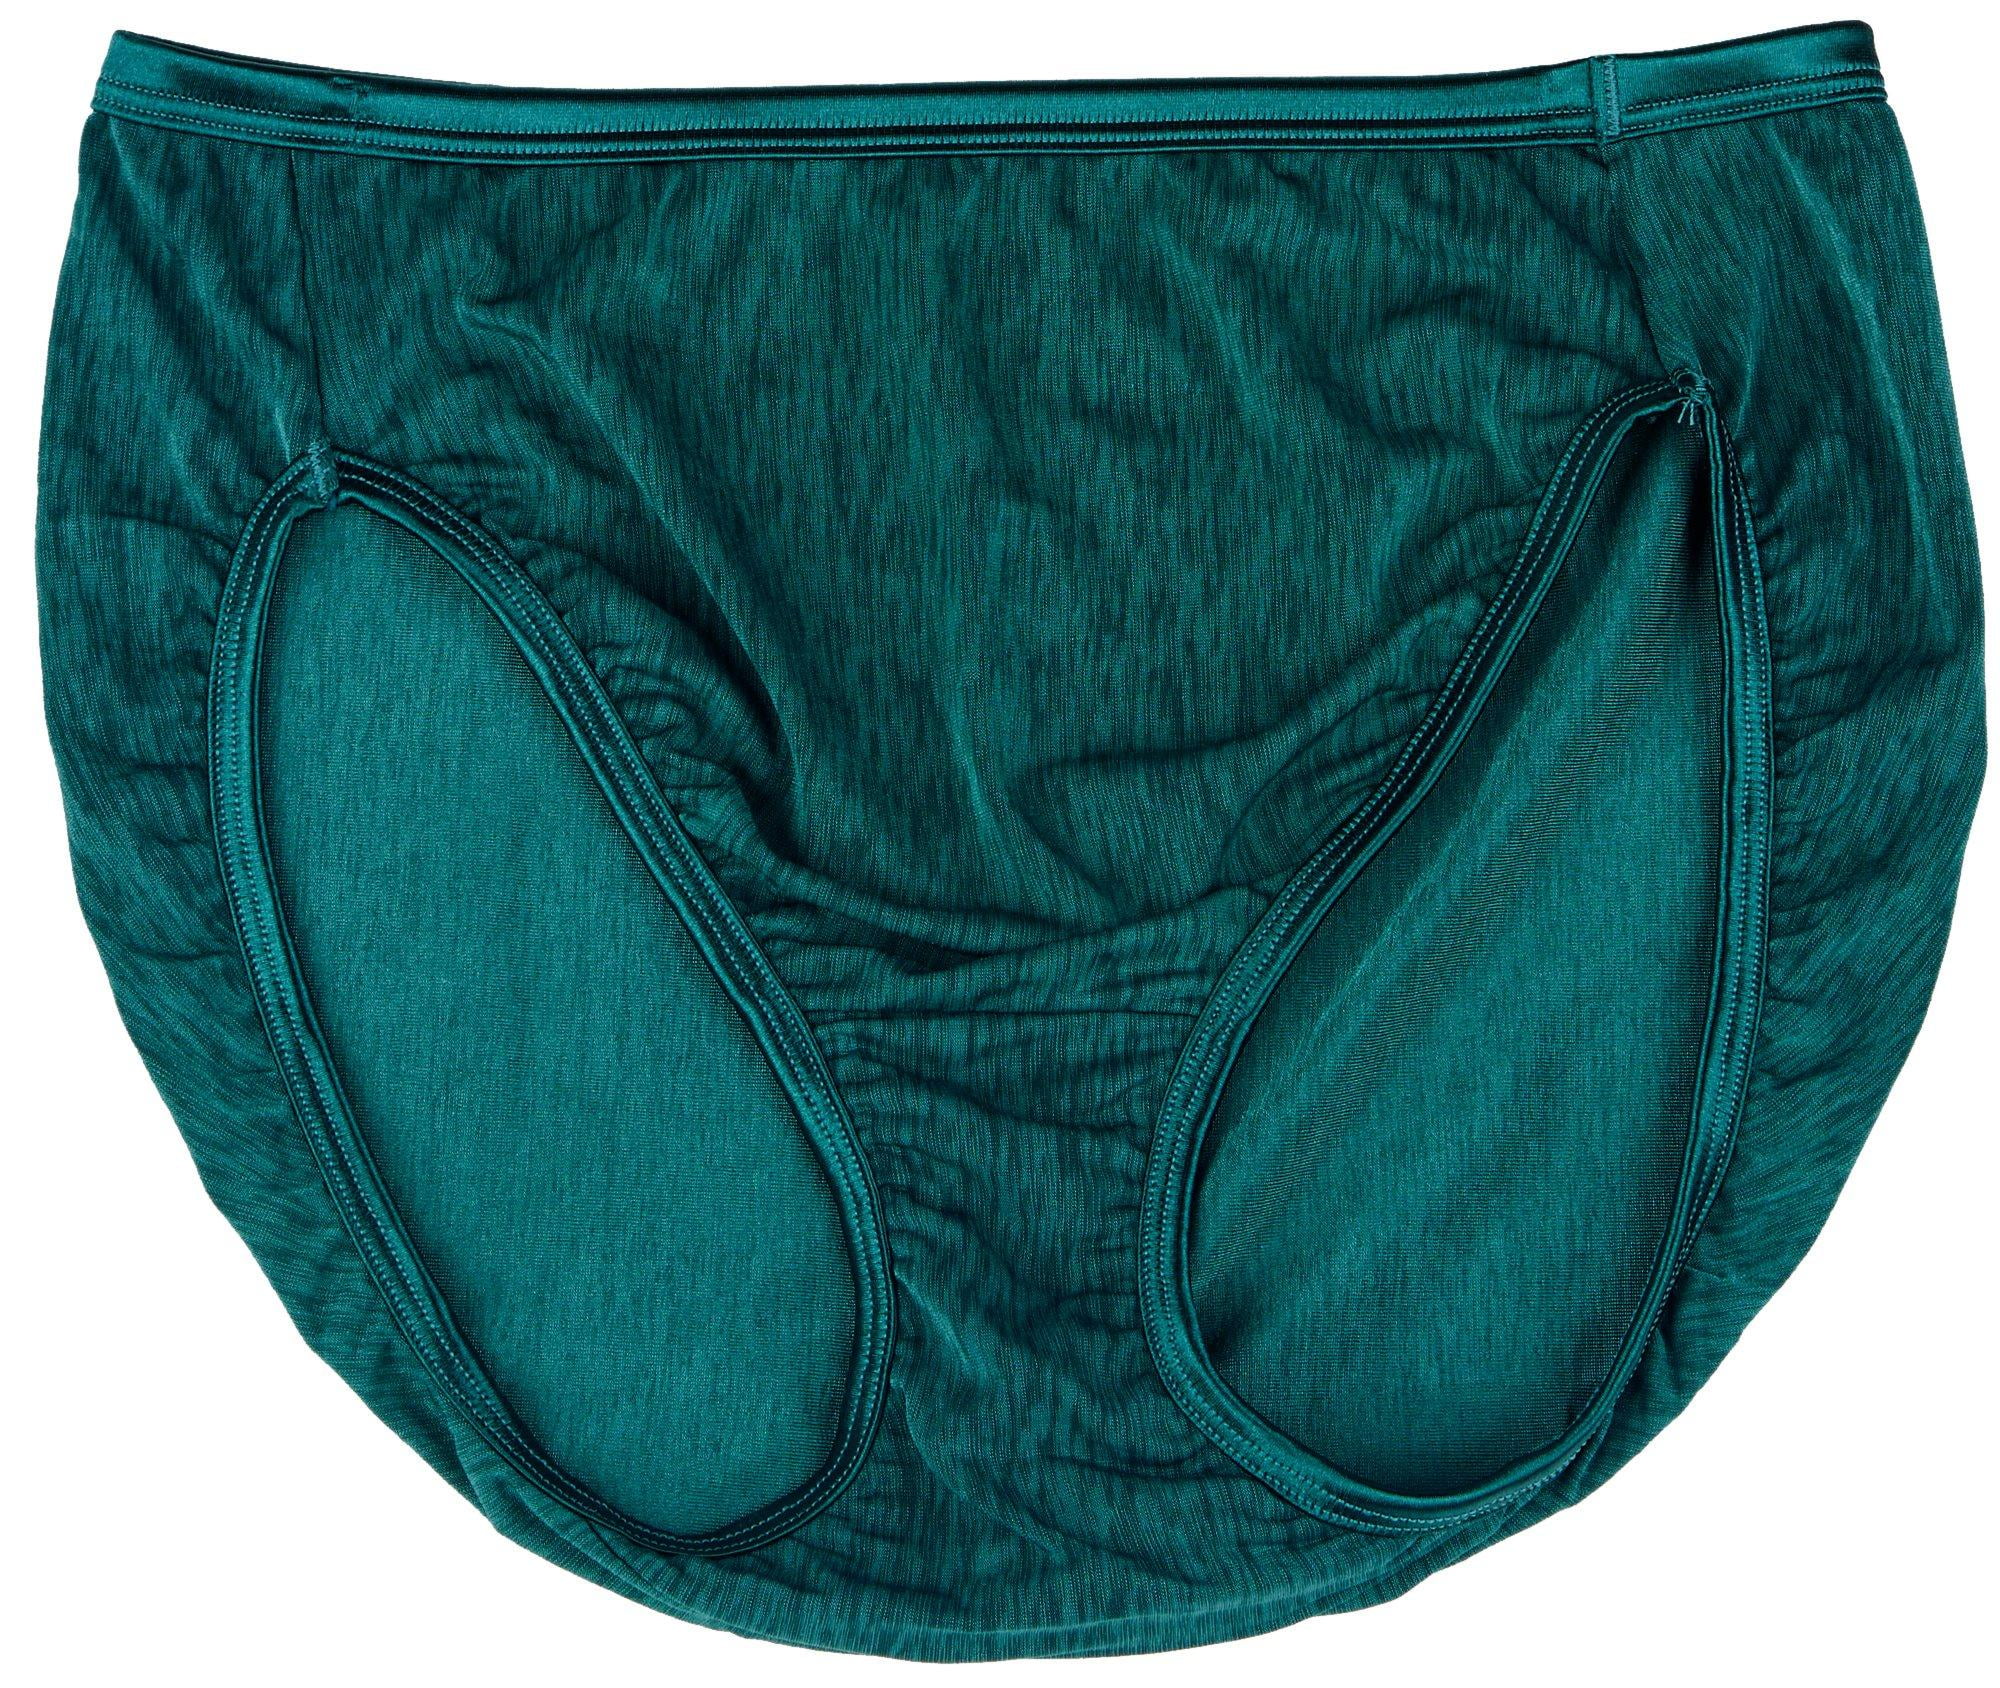 Women's Vanity Fair 13108 Illumination Hi-Cut Brief Panty (Deep Emerald 7)  